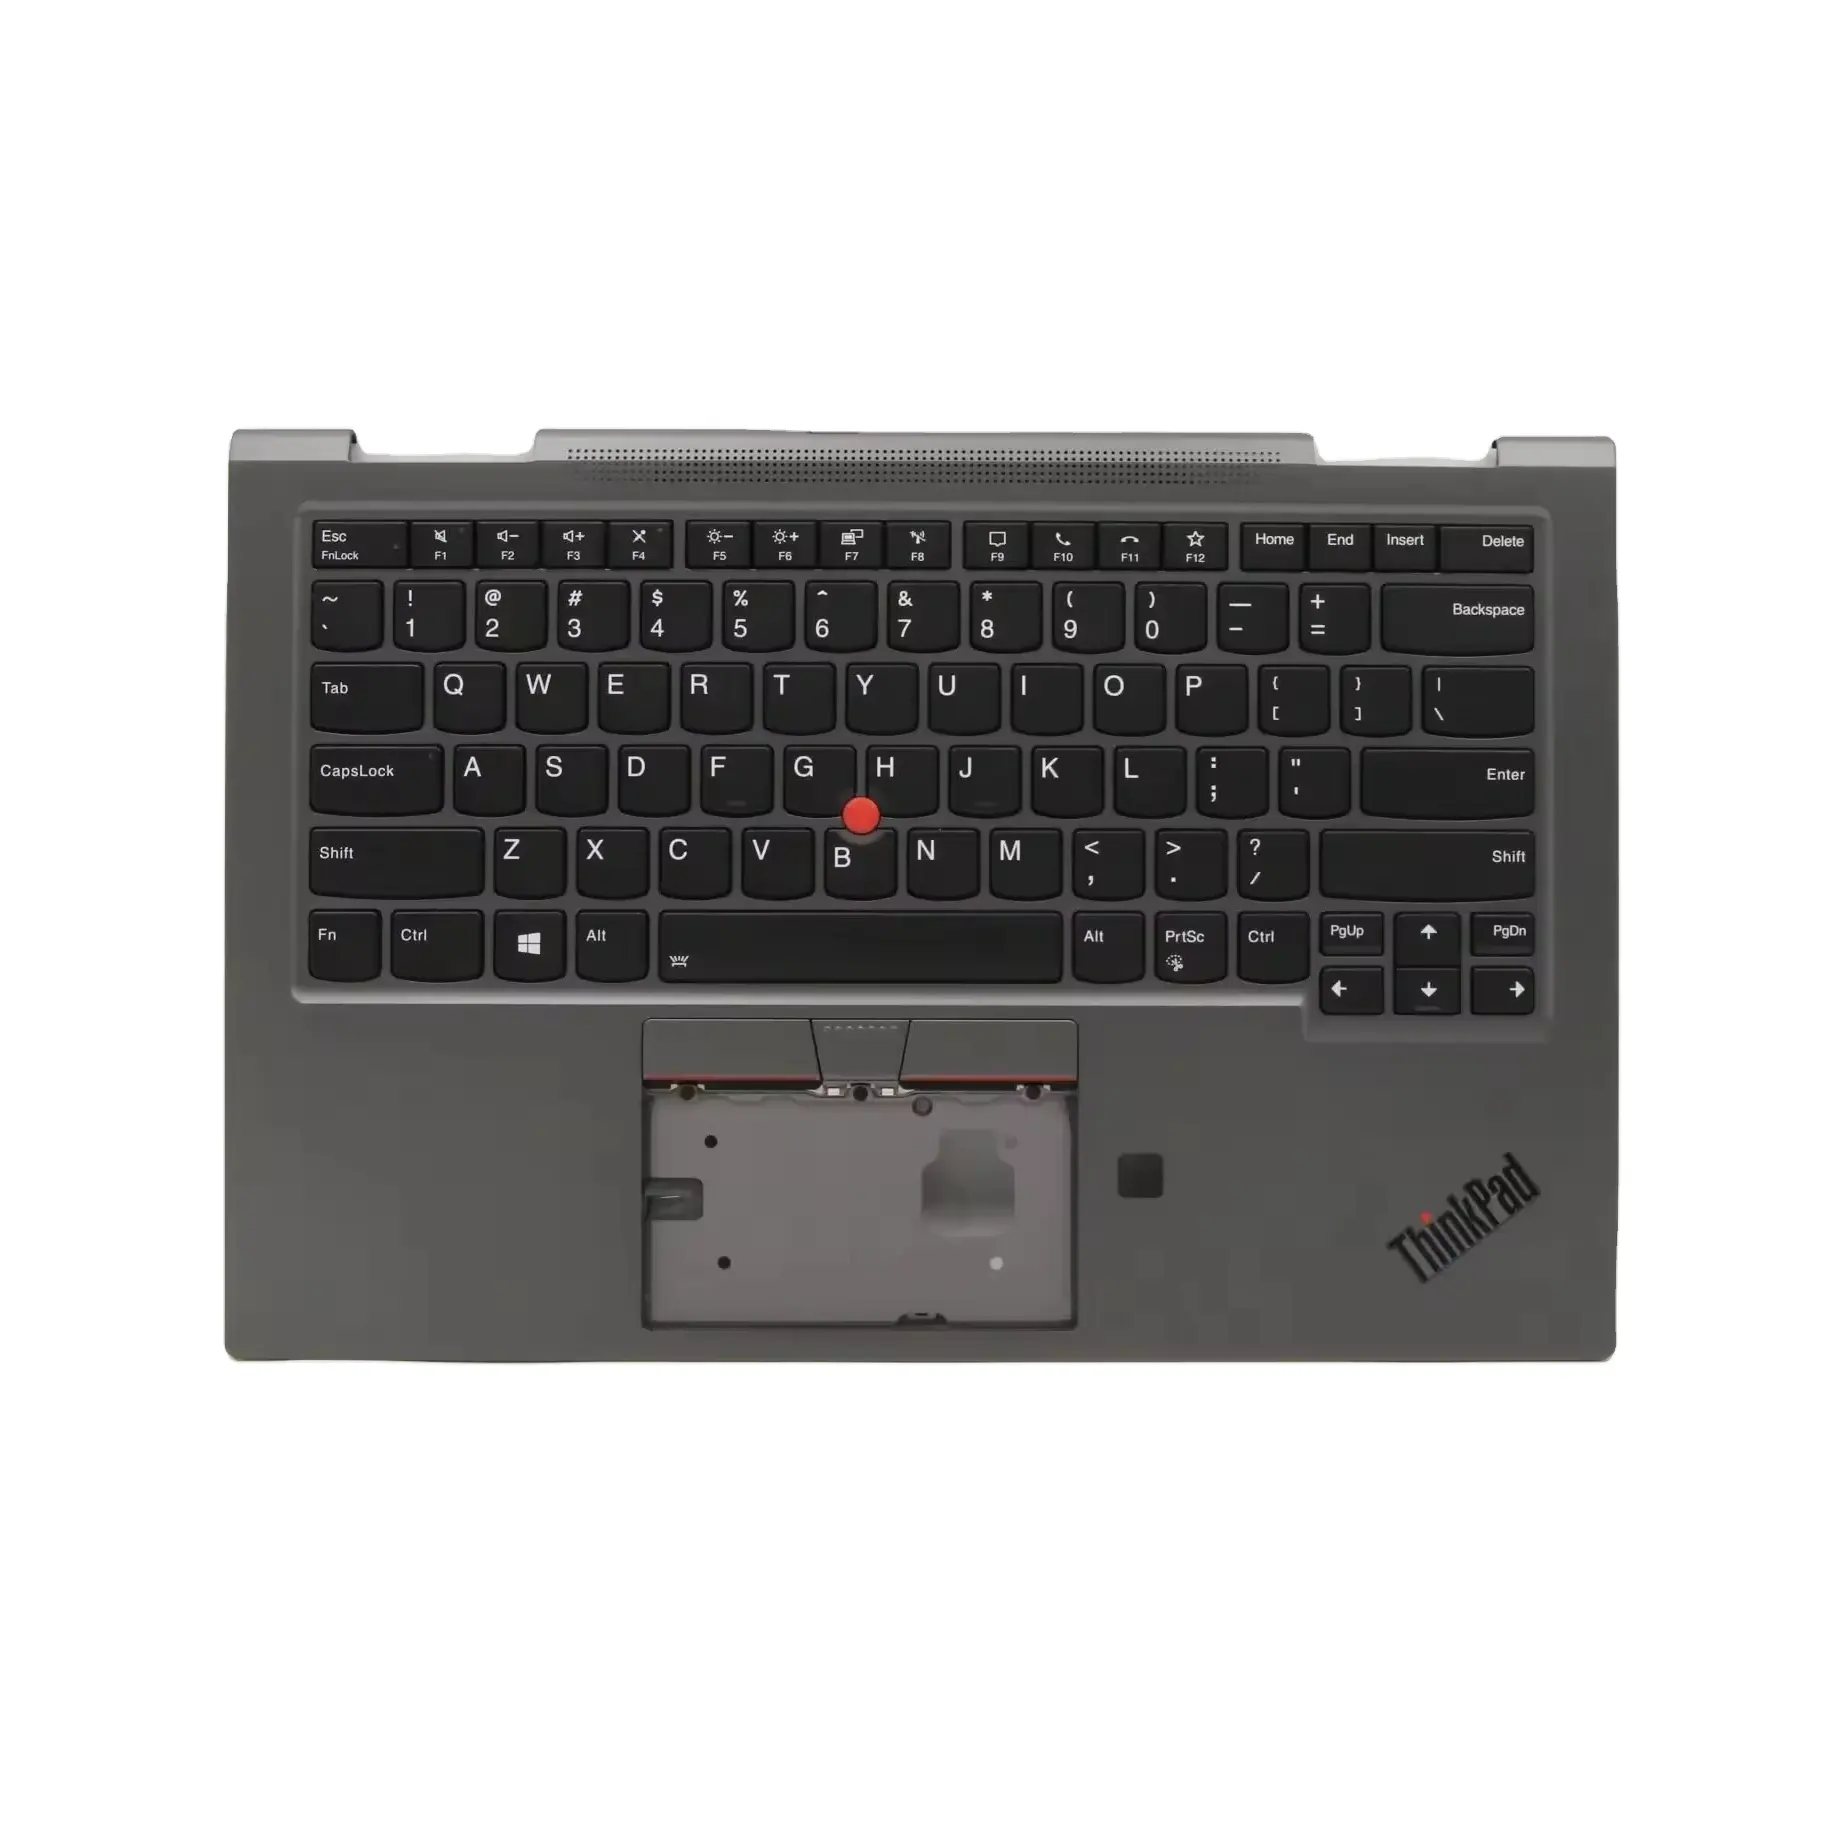 लेनोवो थिंकपैड X1 योगा 5वीं पीढ़ी (20UB, 20UC) बैकलाइट लैपटॉप कीबोर्ड 5M10Z37154 के लिए नया यूएस ब्लैक कीबोर्ड